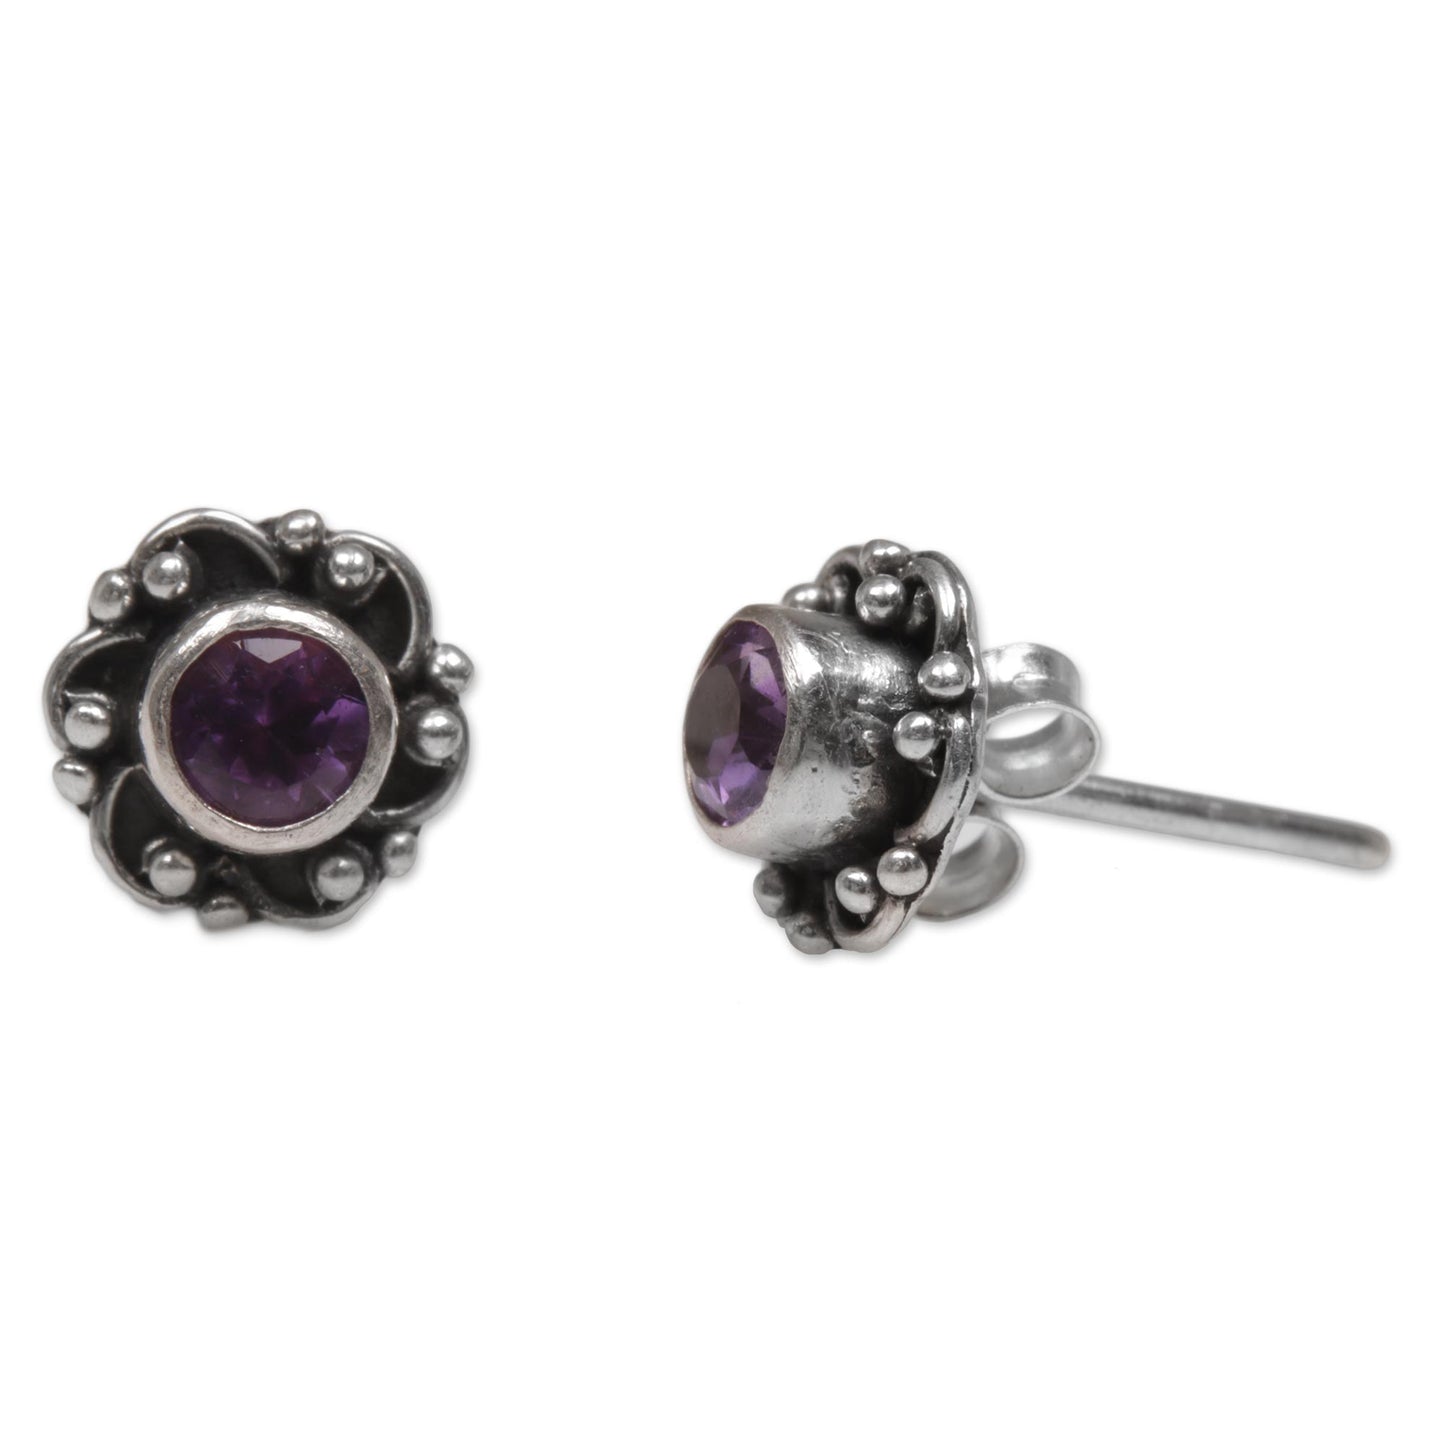 Little Happiness in Purple Amethyst Earrings